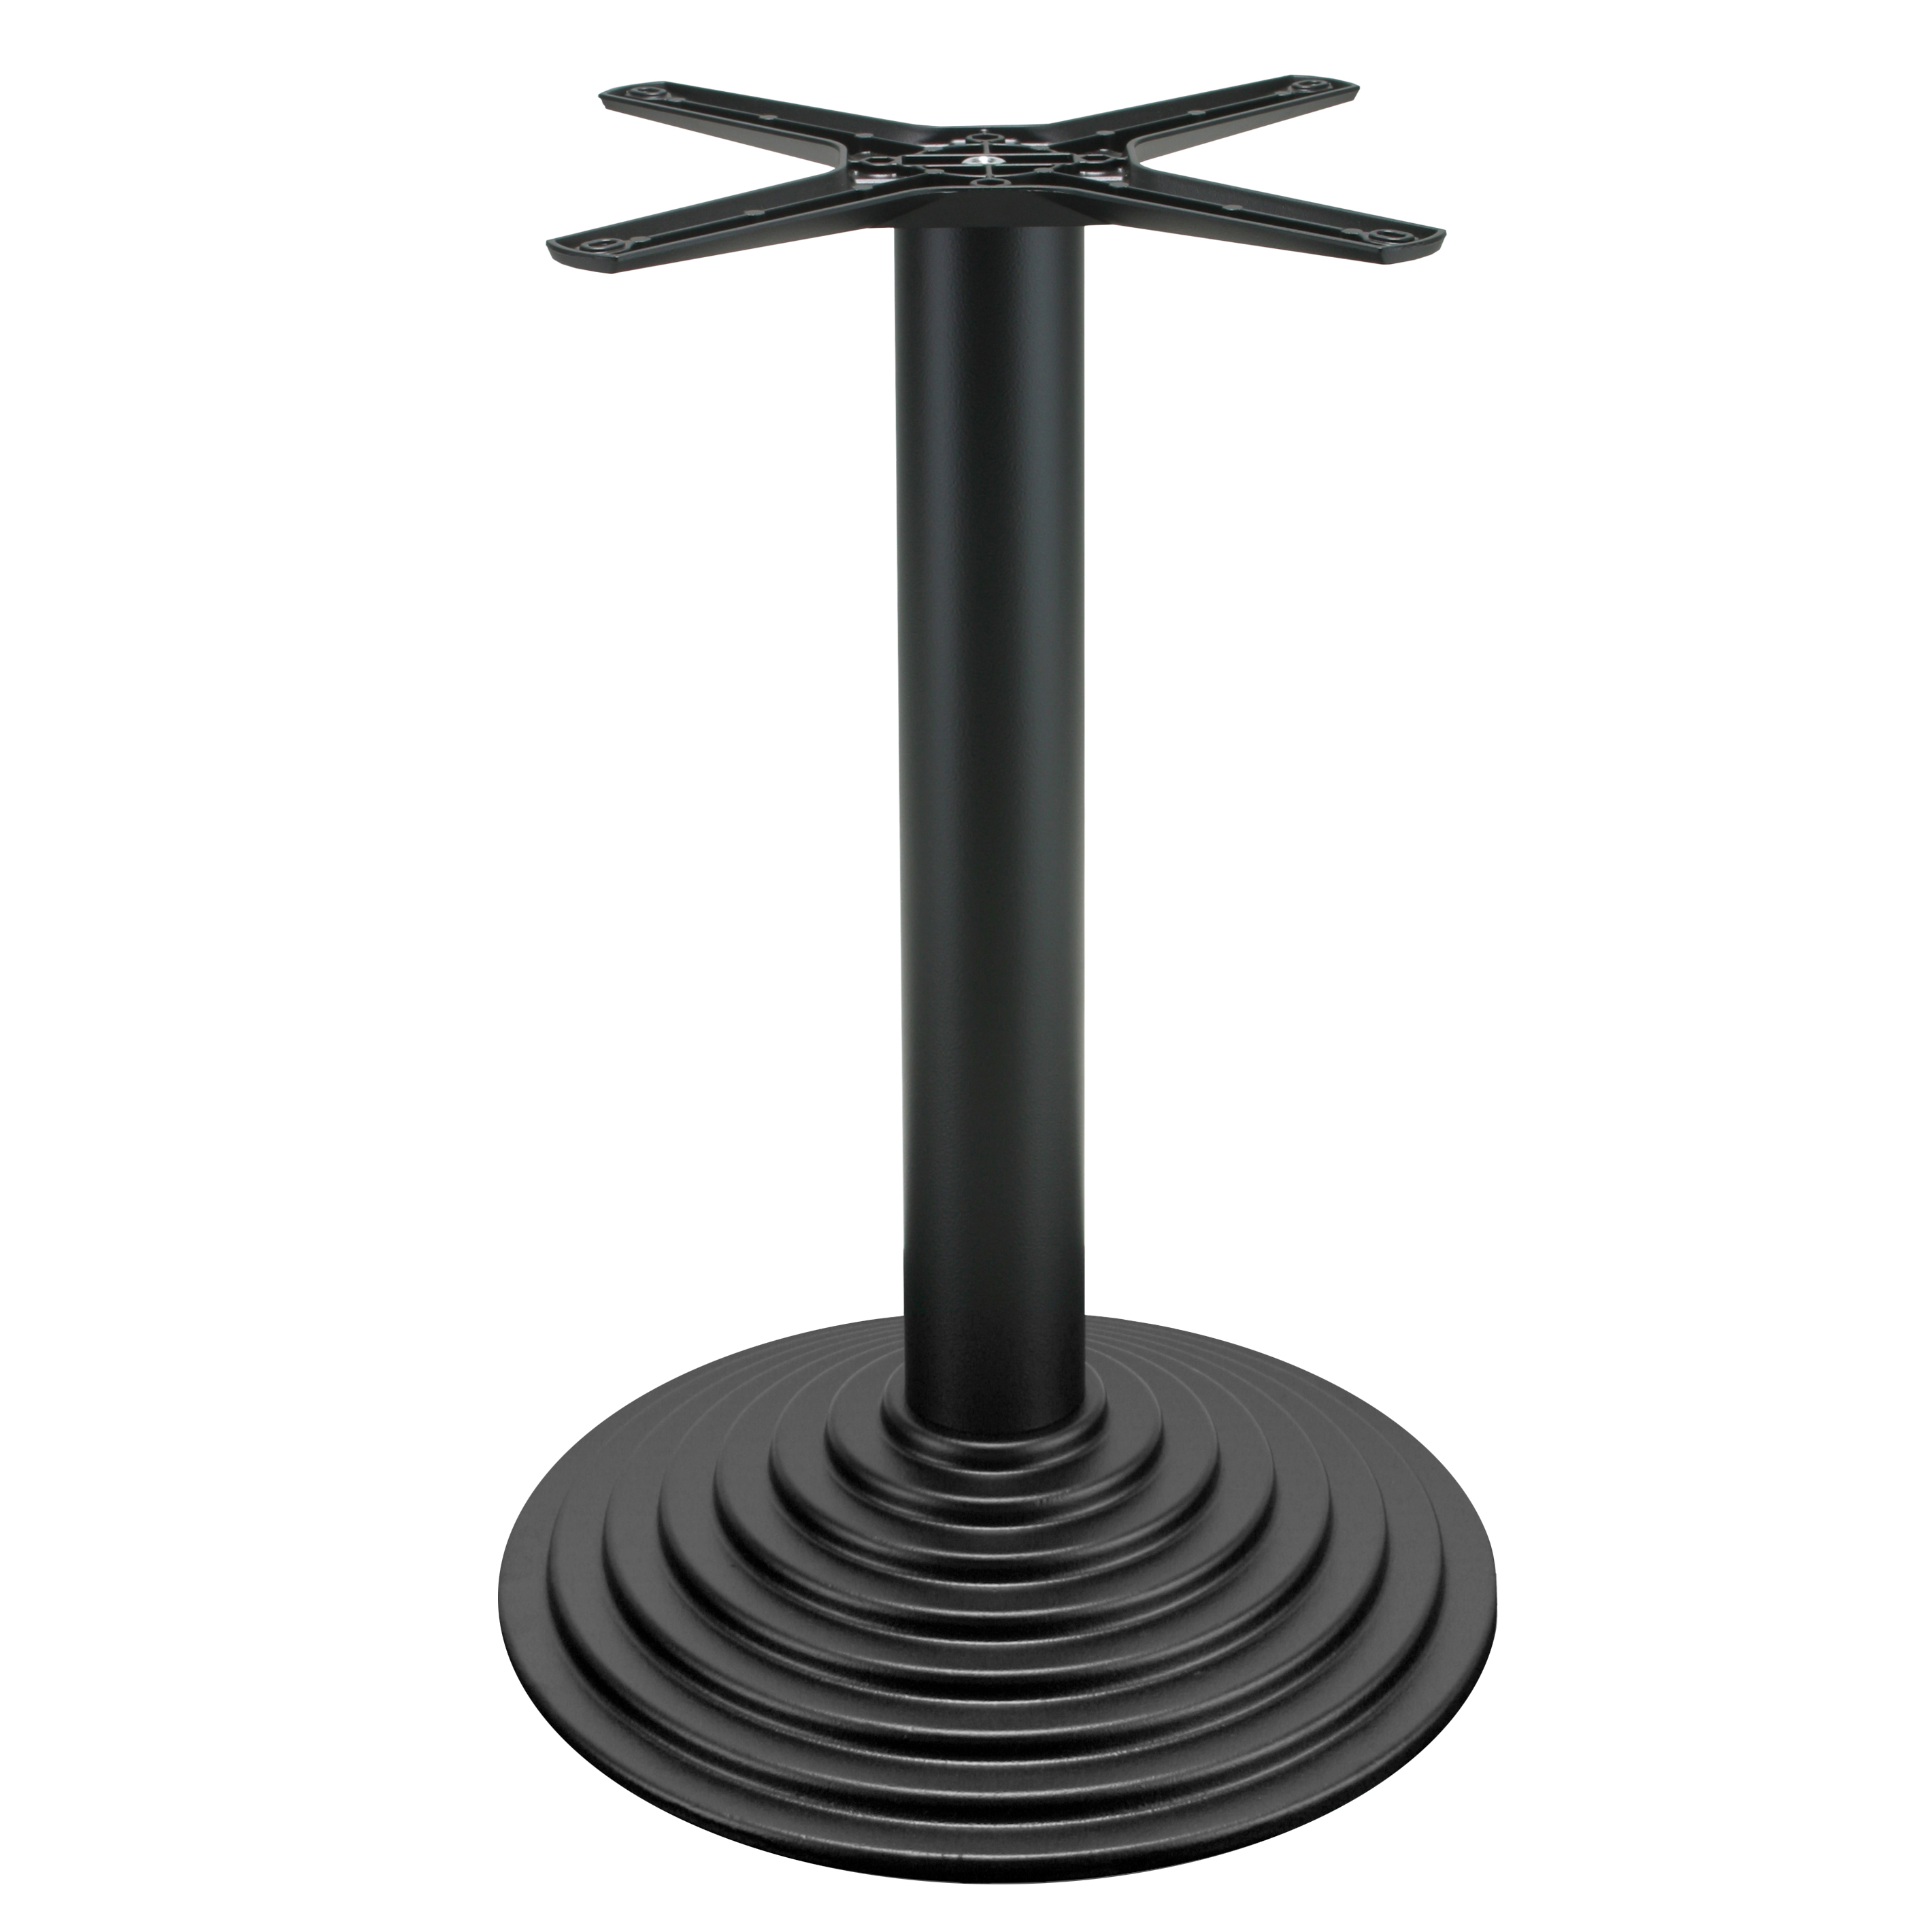 Gusseisen Tischgestell P102, pulverbeschichtet schwarz, runde Bodenplatte